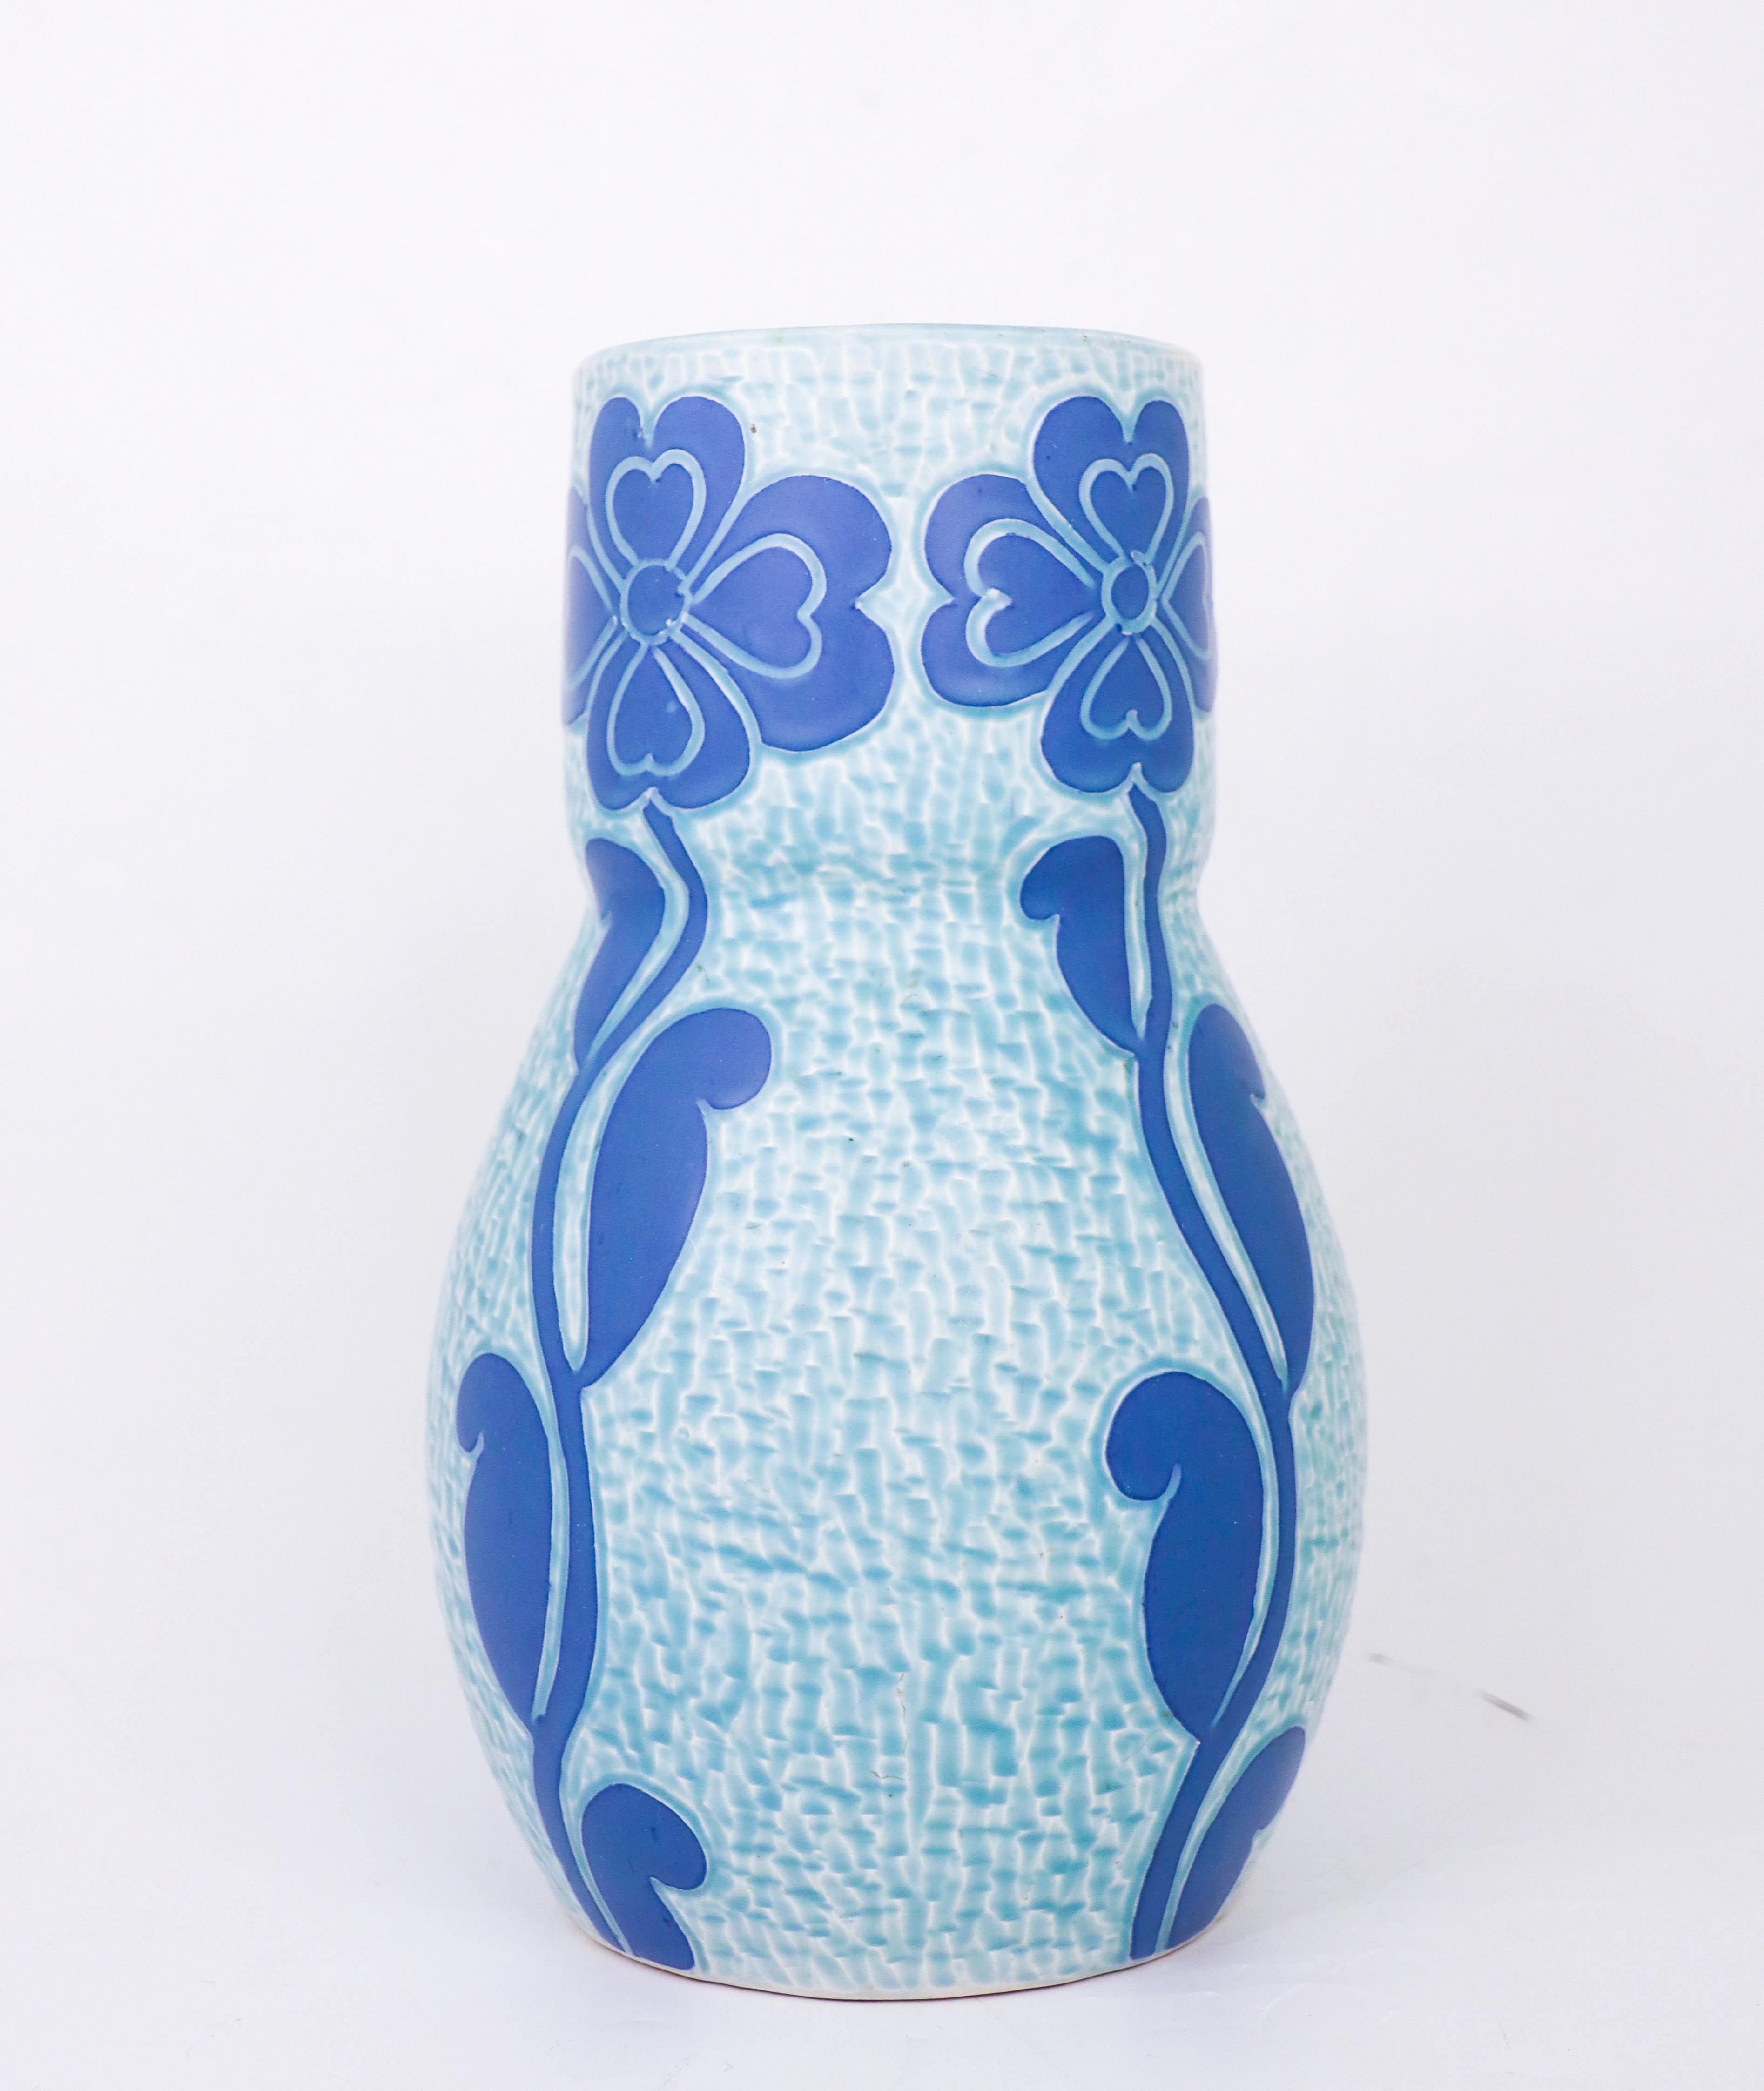 Diese Jugendstilvase aus Keramik wurde 1920 von Josef Ekberg bei Gustavsberg entworfen und stammt aus der klassischen Sgrafitto-Serie. Die Vase ist 23,5 cm (9,4